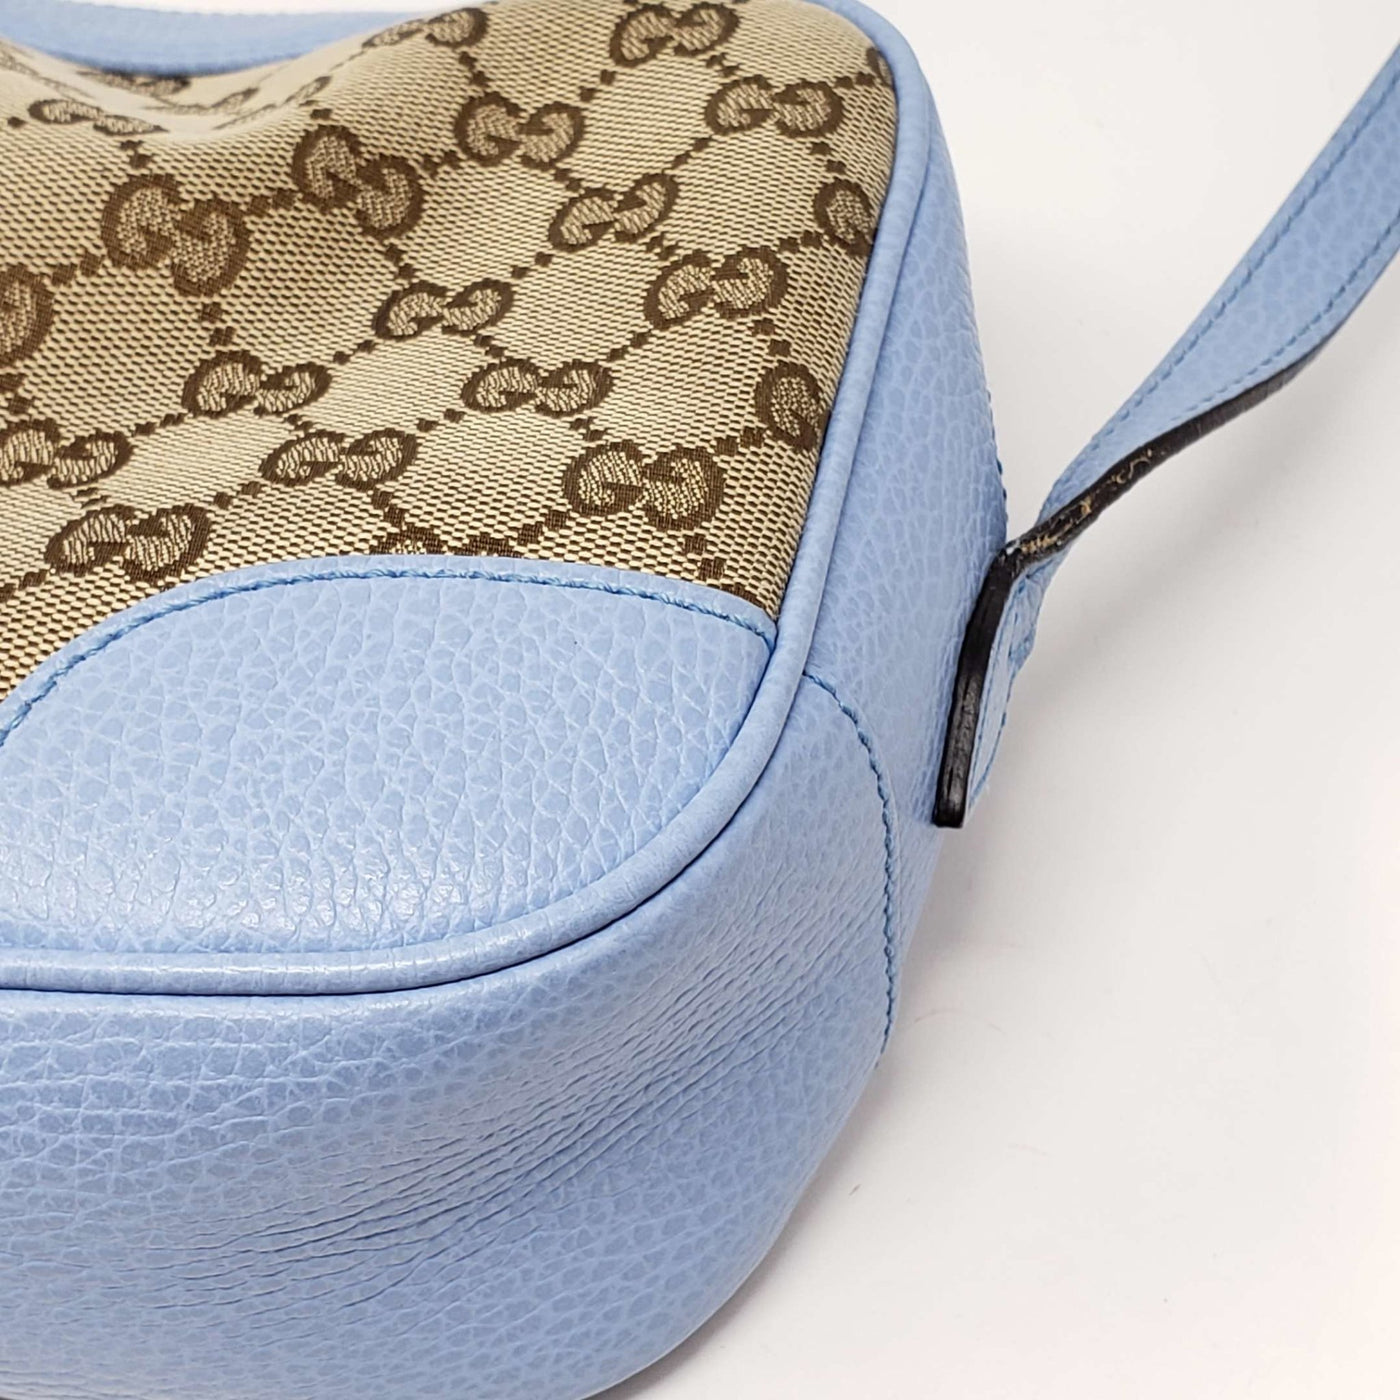 Gucci MicroGuccissima Camera Crossbody Bag | Luxury Cheaper.